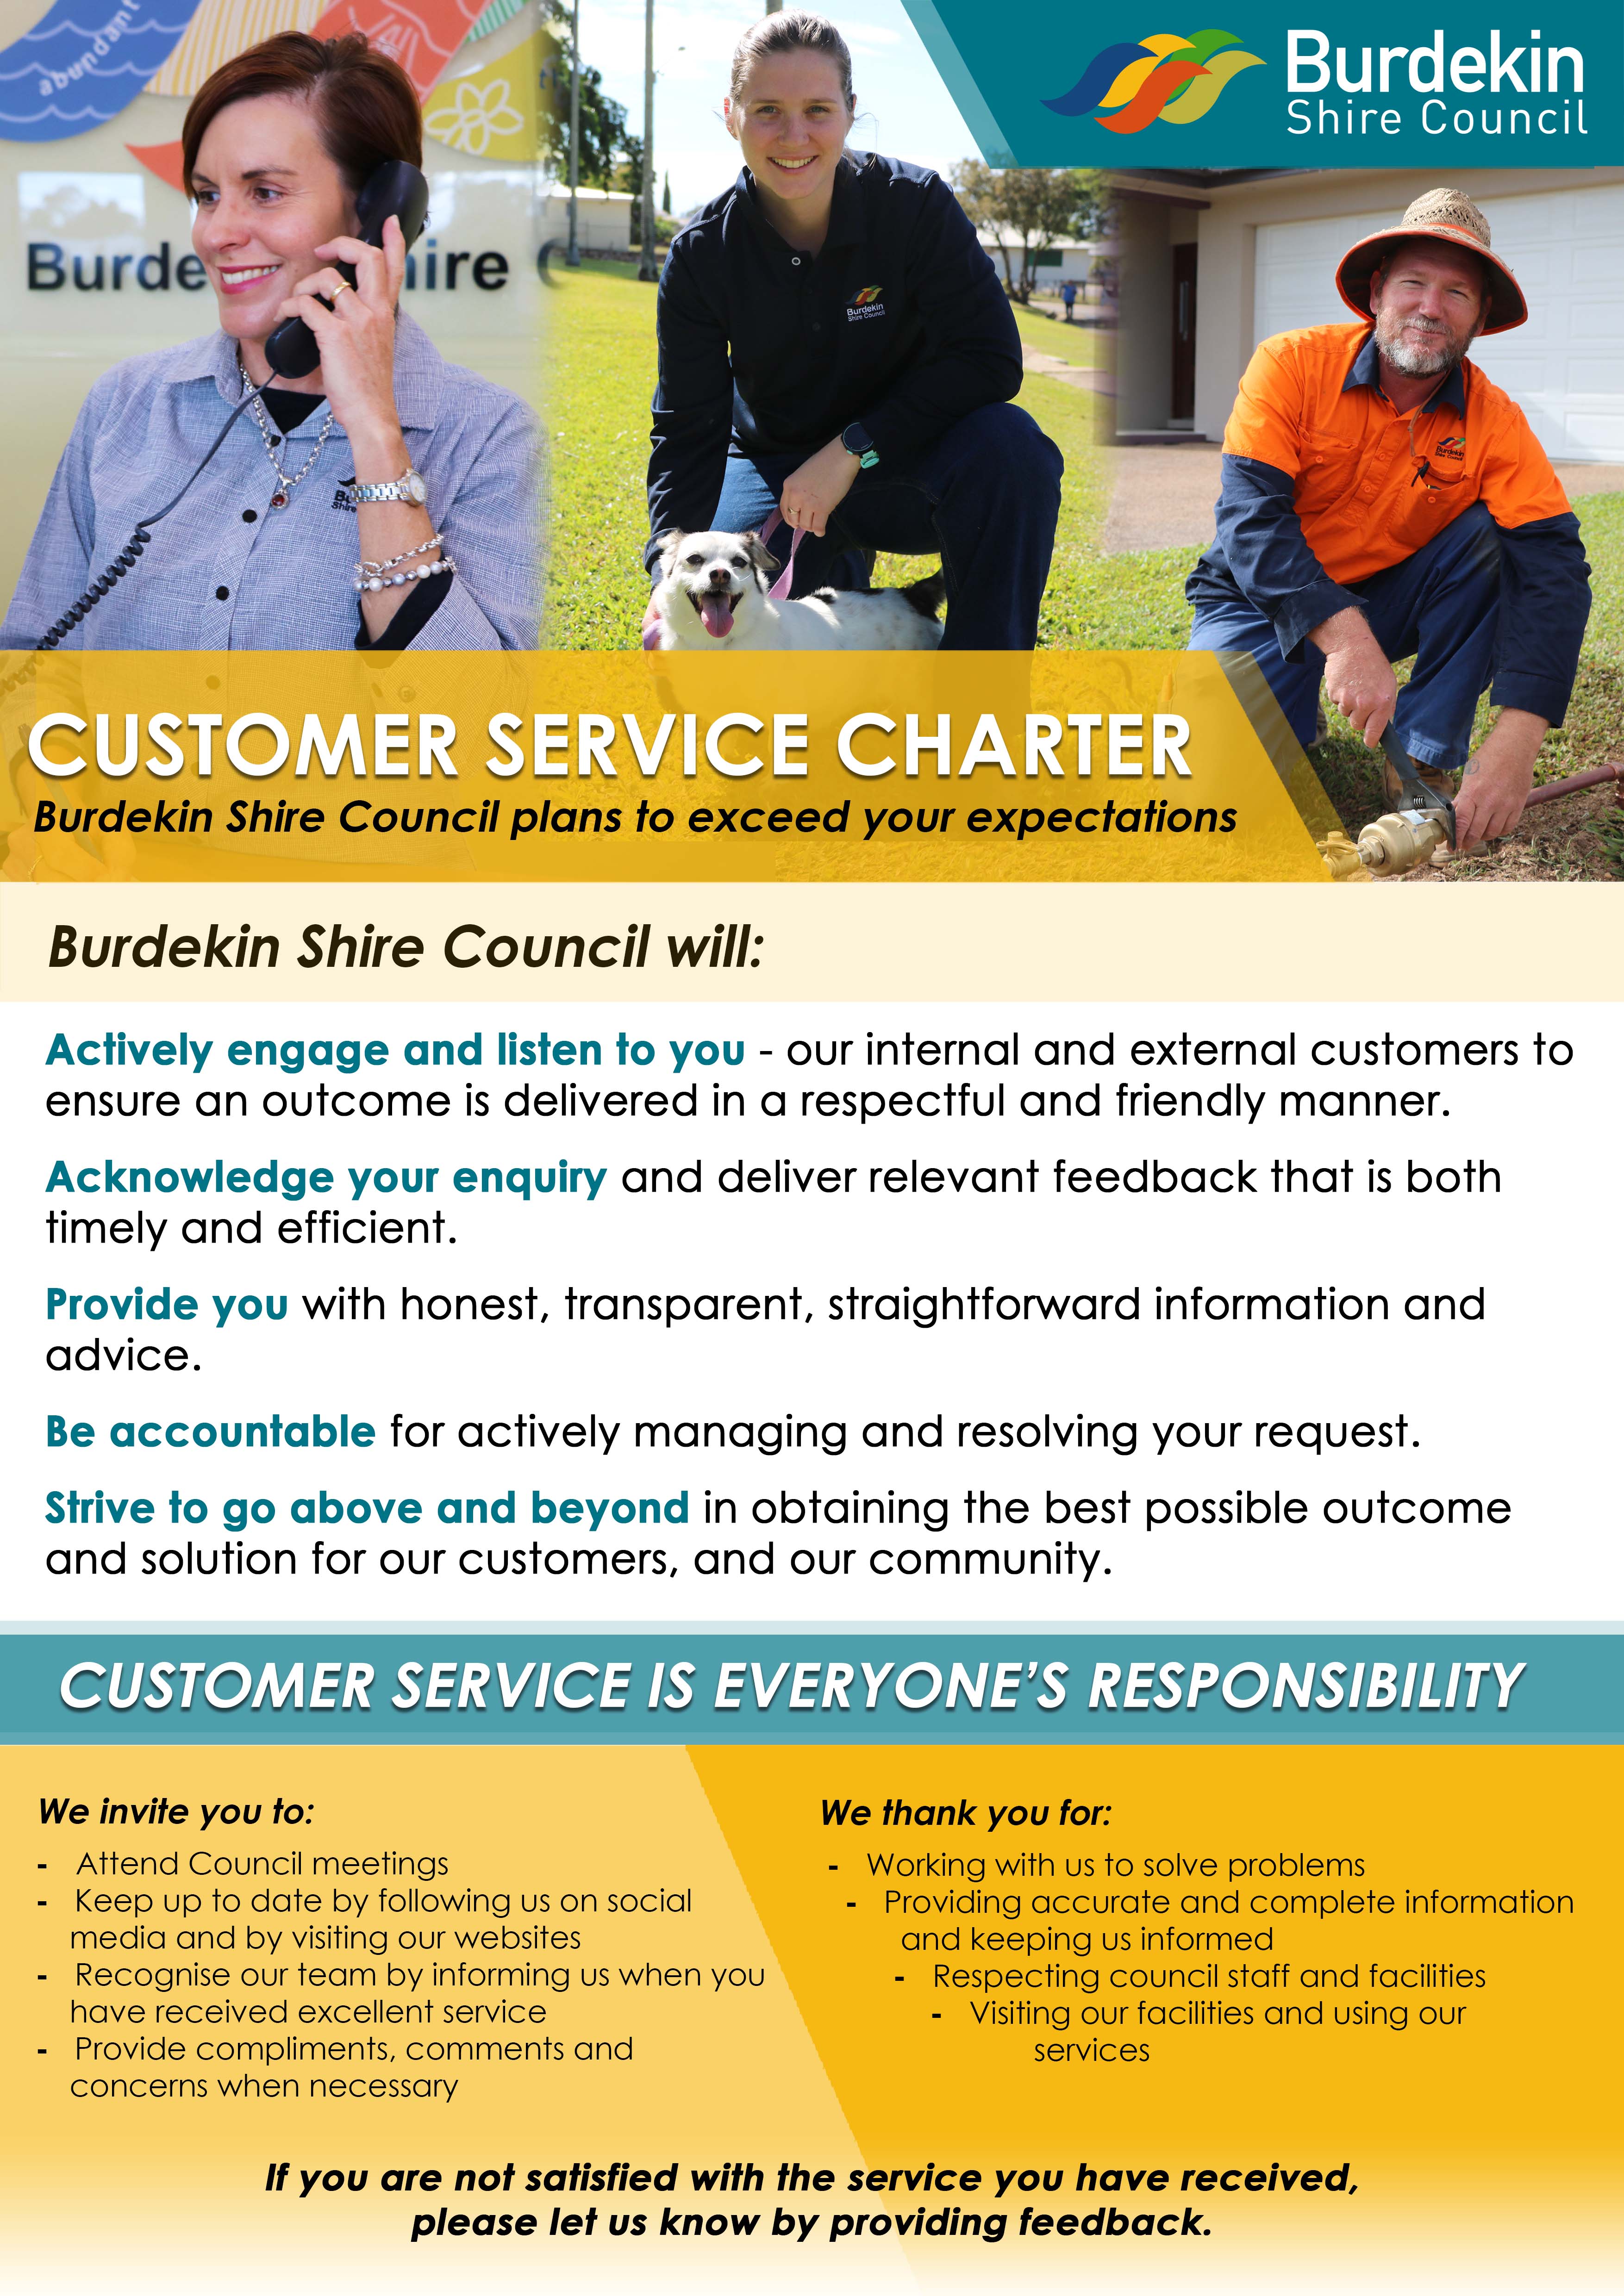 Burdekin Shire Council Customer Service Charter